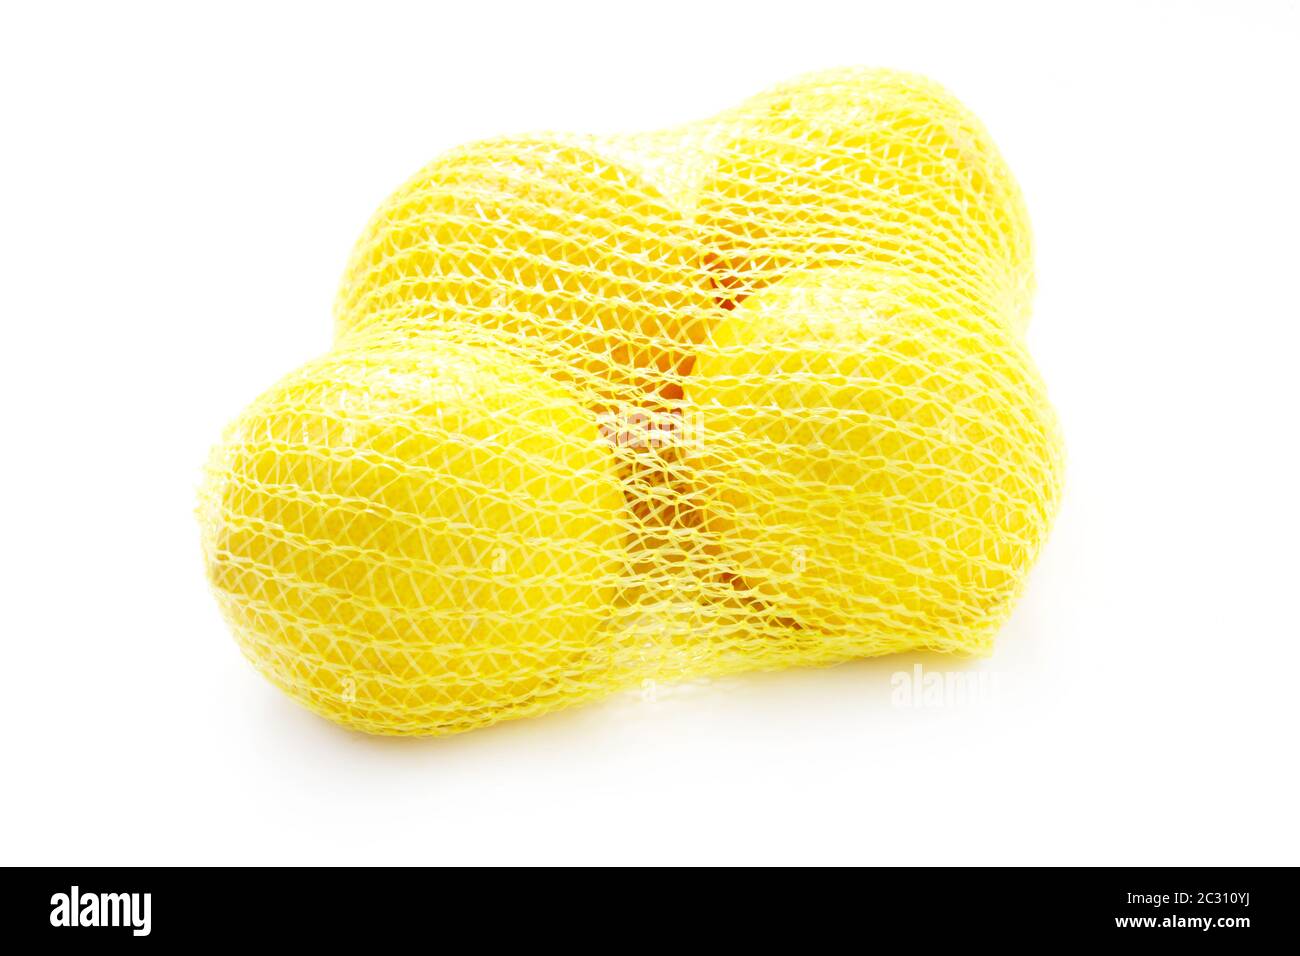 Lemons In A Net Stock Photo